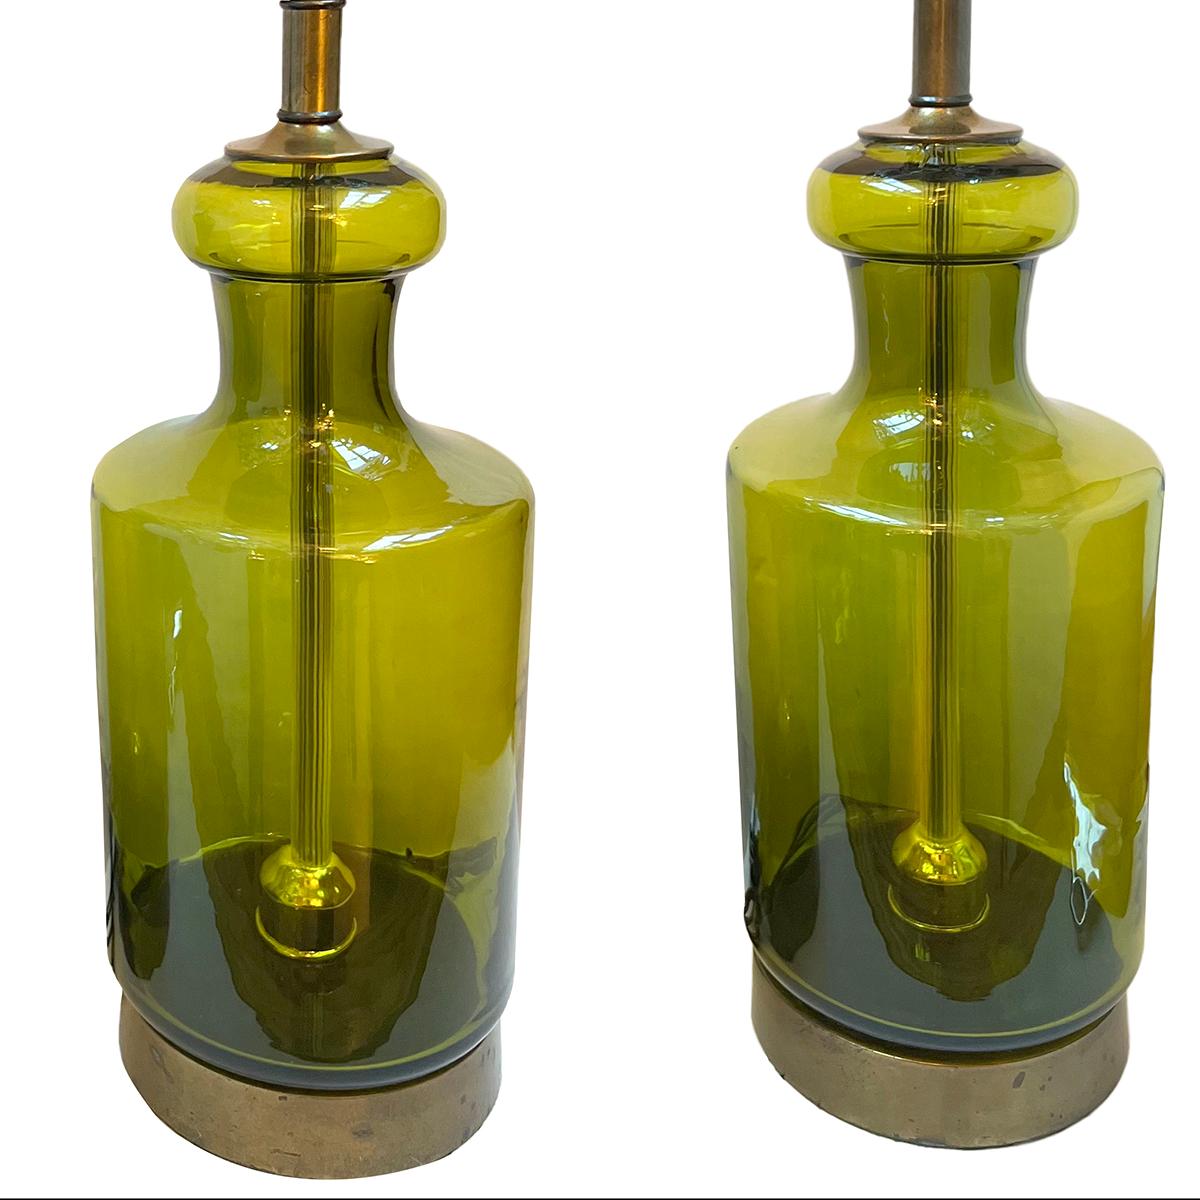 Paar italienische Lampen aus mundgeblasenem Glas aus den 1960er Jahren.

Abmessungen:
Höhe des Körpers: 19,5